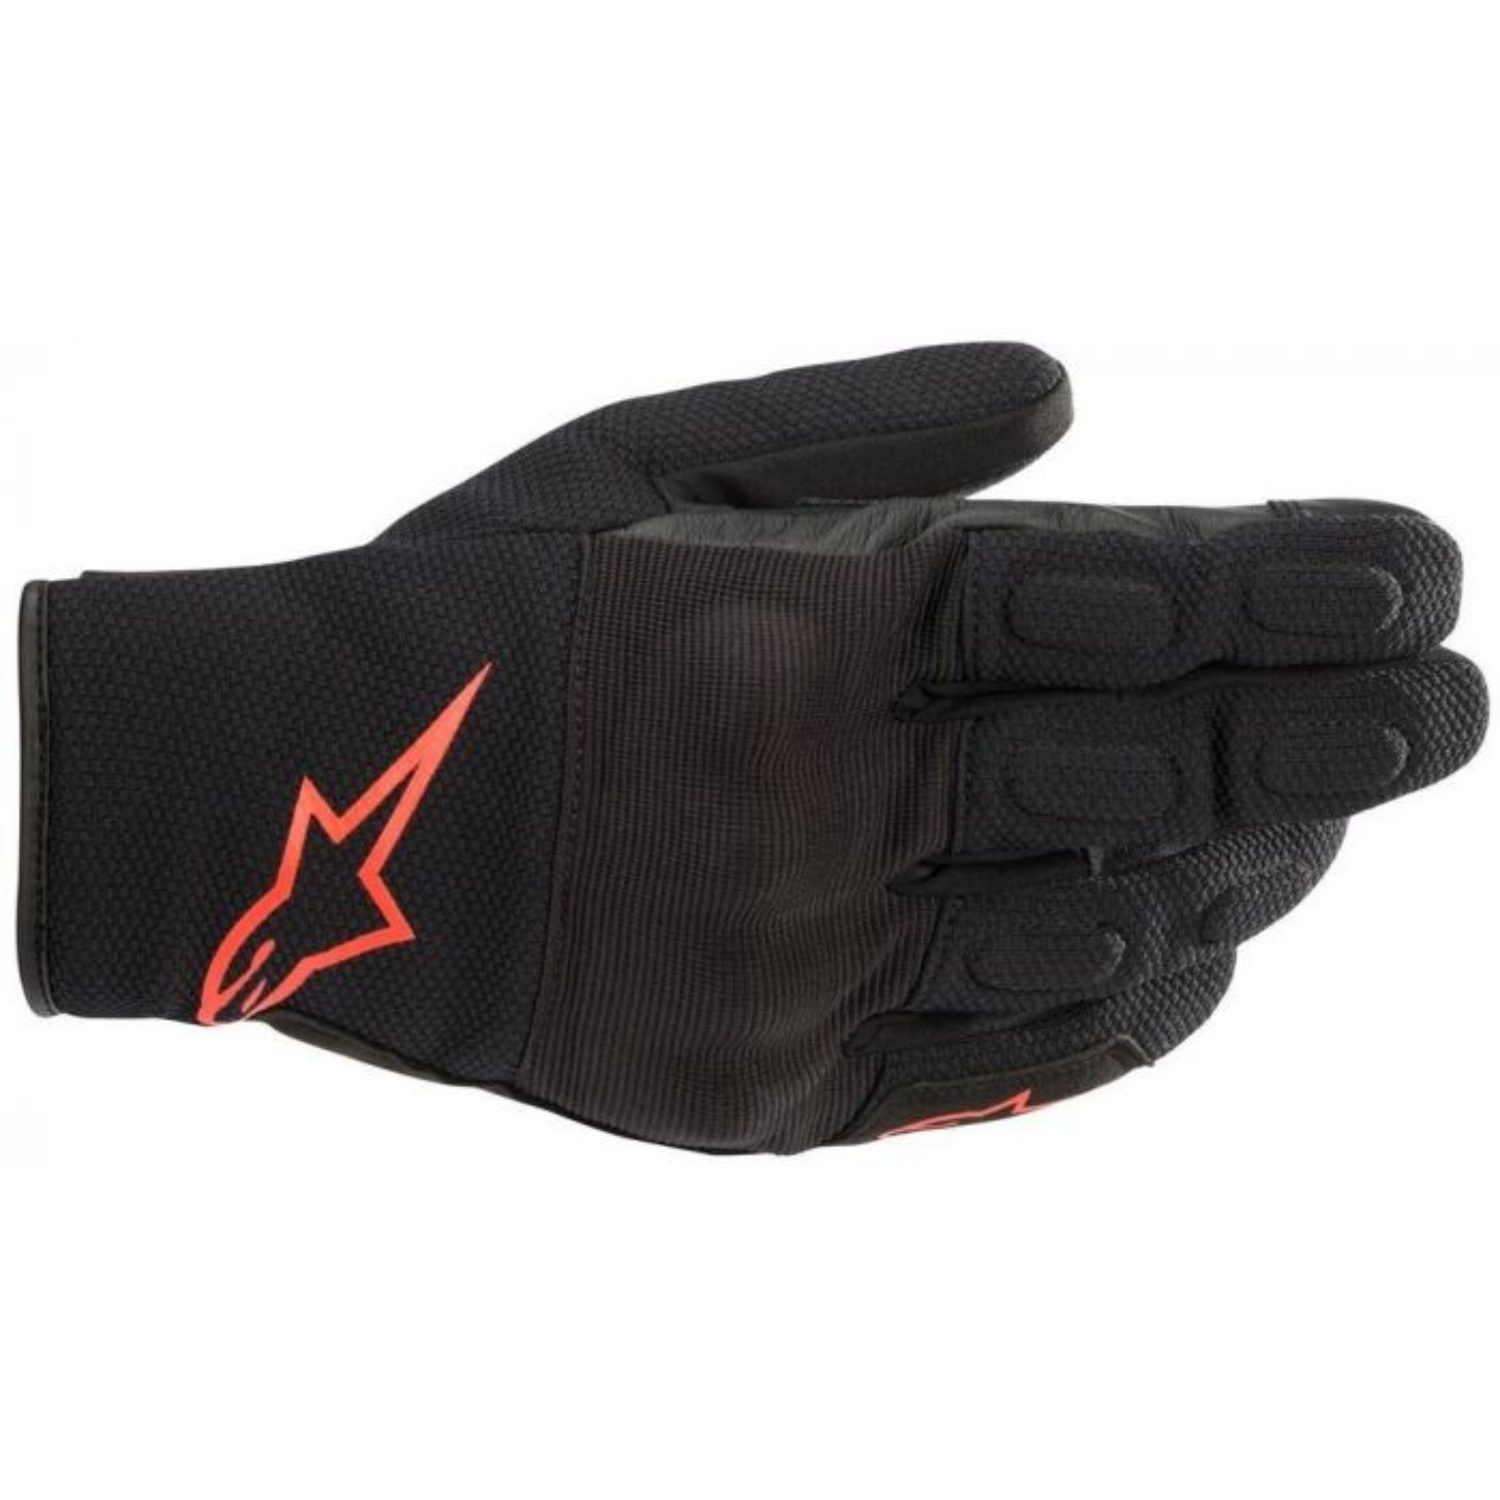 Image of Alpinestars S Max Drystar Gloves Black Red Fluo Talla M